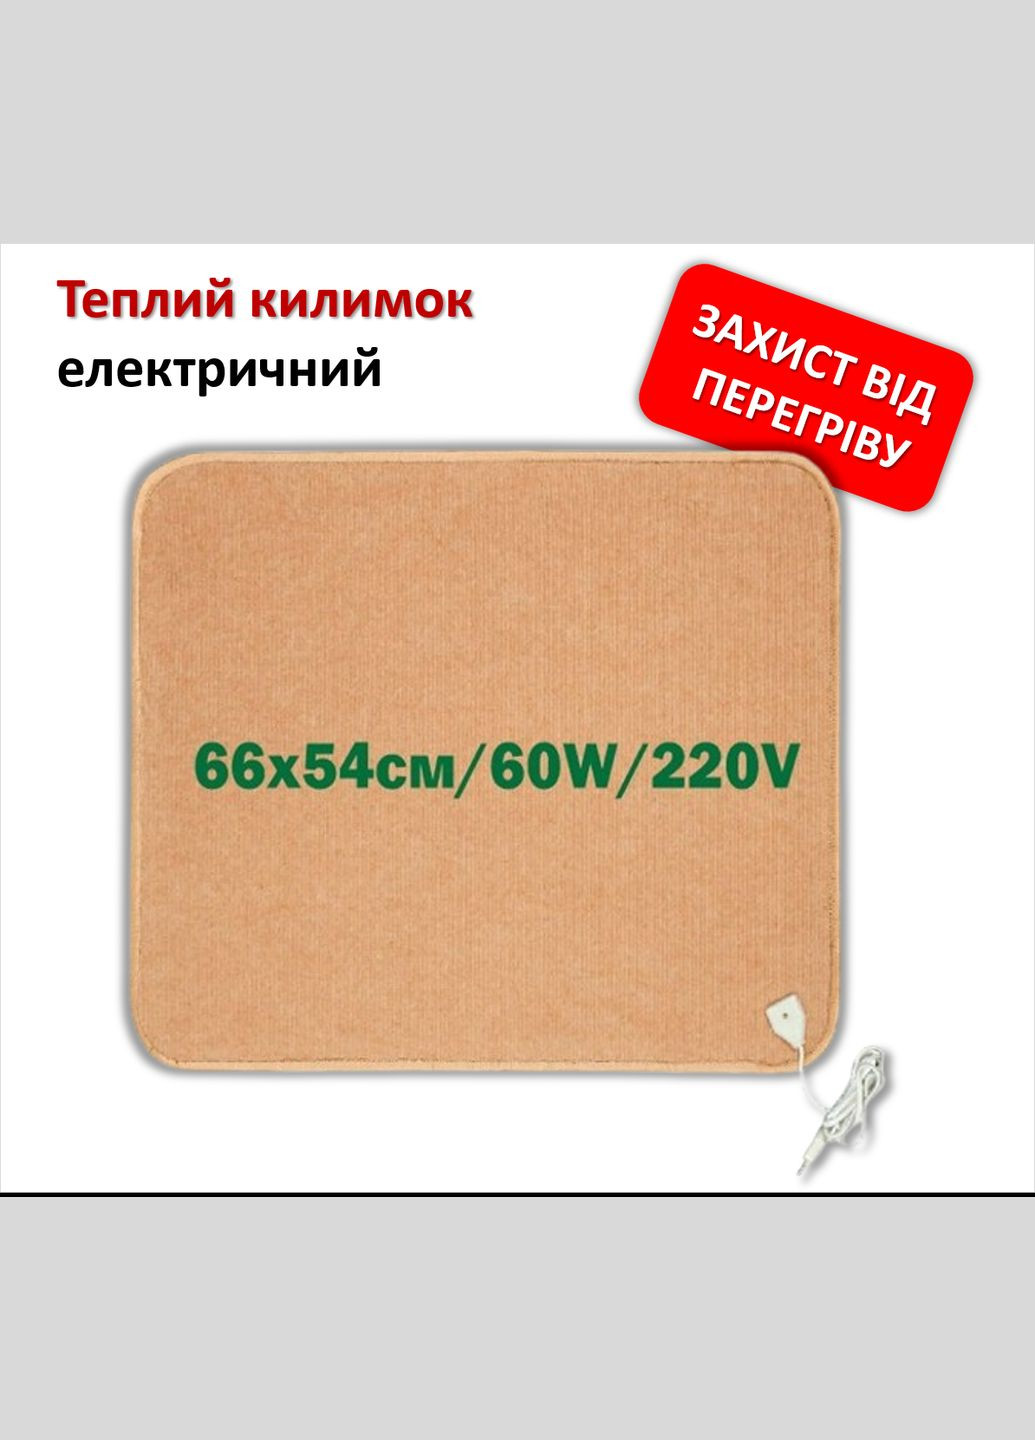 Електричний килимок з підігрівом інфрачервоний 66х54см/60W/220V із захистом від перегріву, світлокоричневий Monocrystal (280947122)